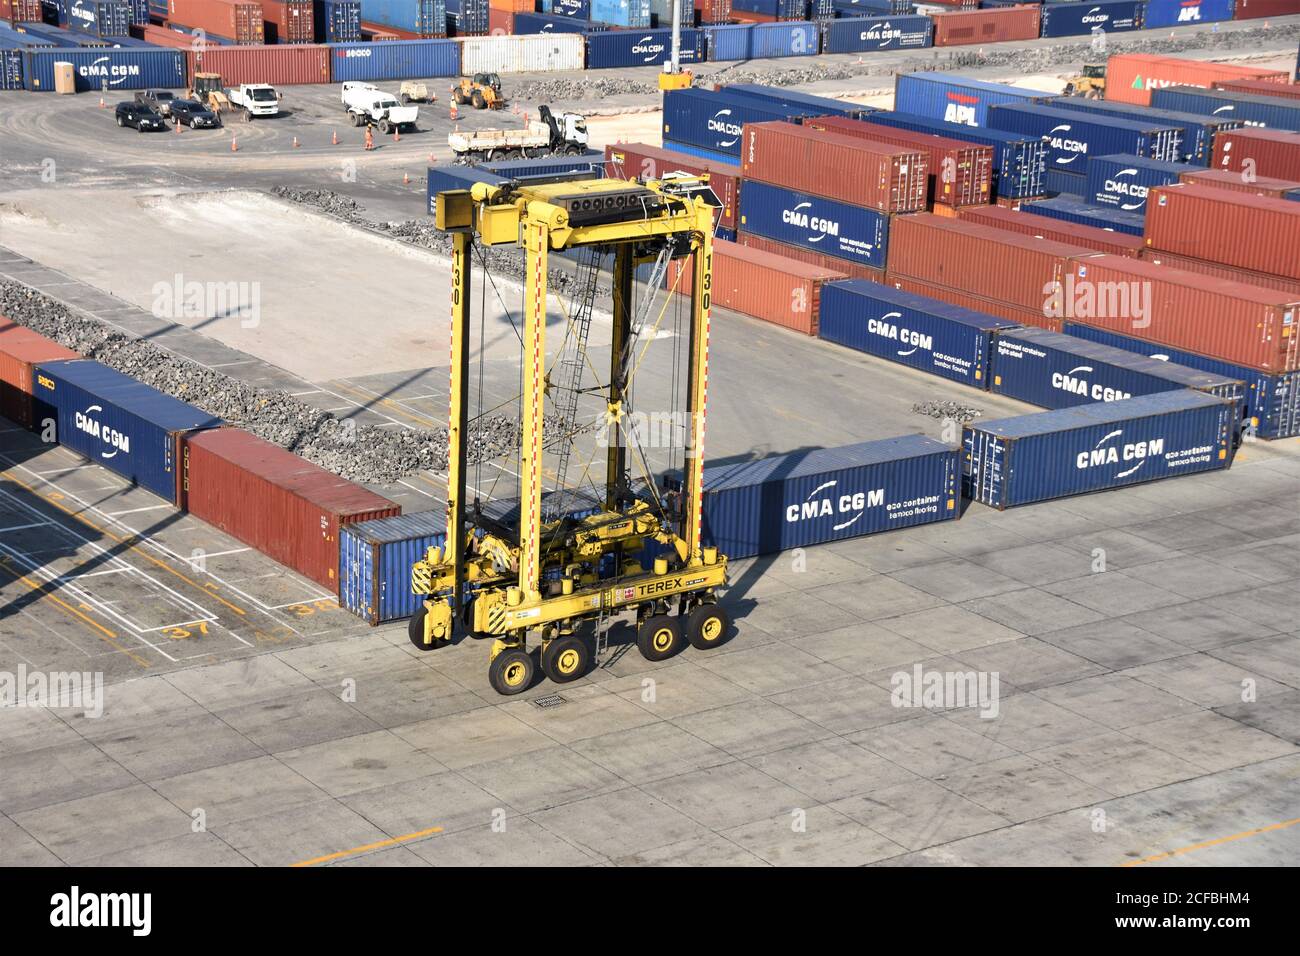 Ein Straddle Carrier im Kingston Freeport Terminal, der in der Nähe von Containern vorbeifährt. Der gelbe Sattelzug ist leer und bewegt sich zum Verladen in Richtung Schiffe. Stockfoto